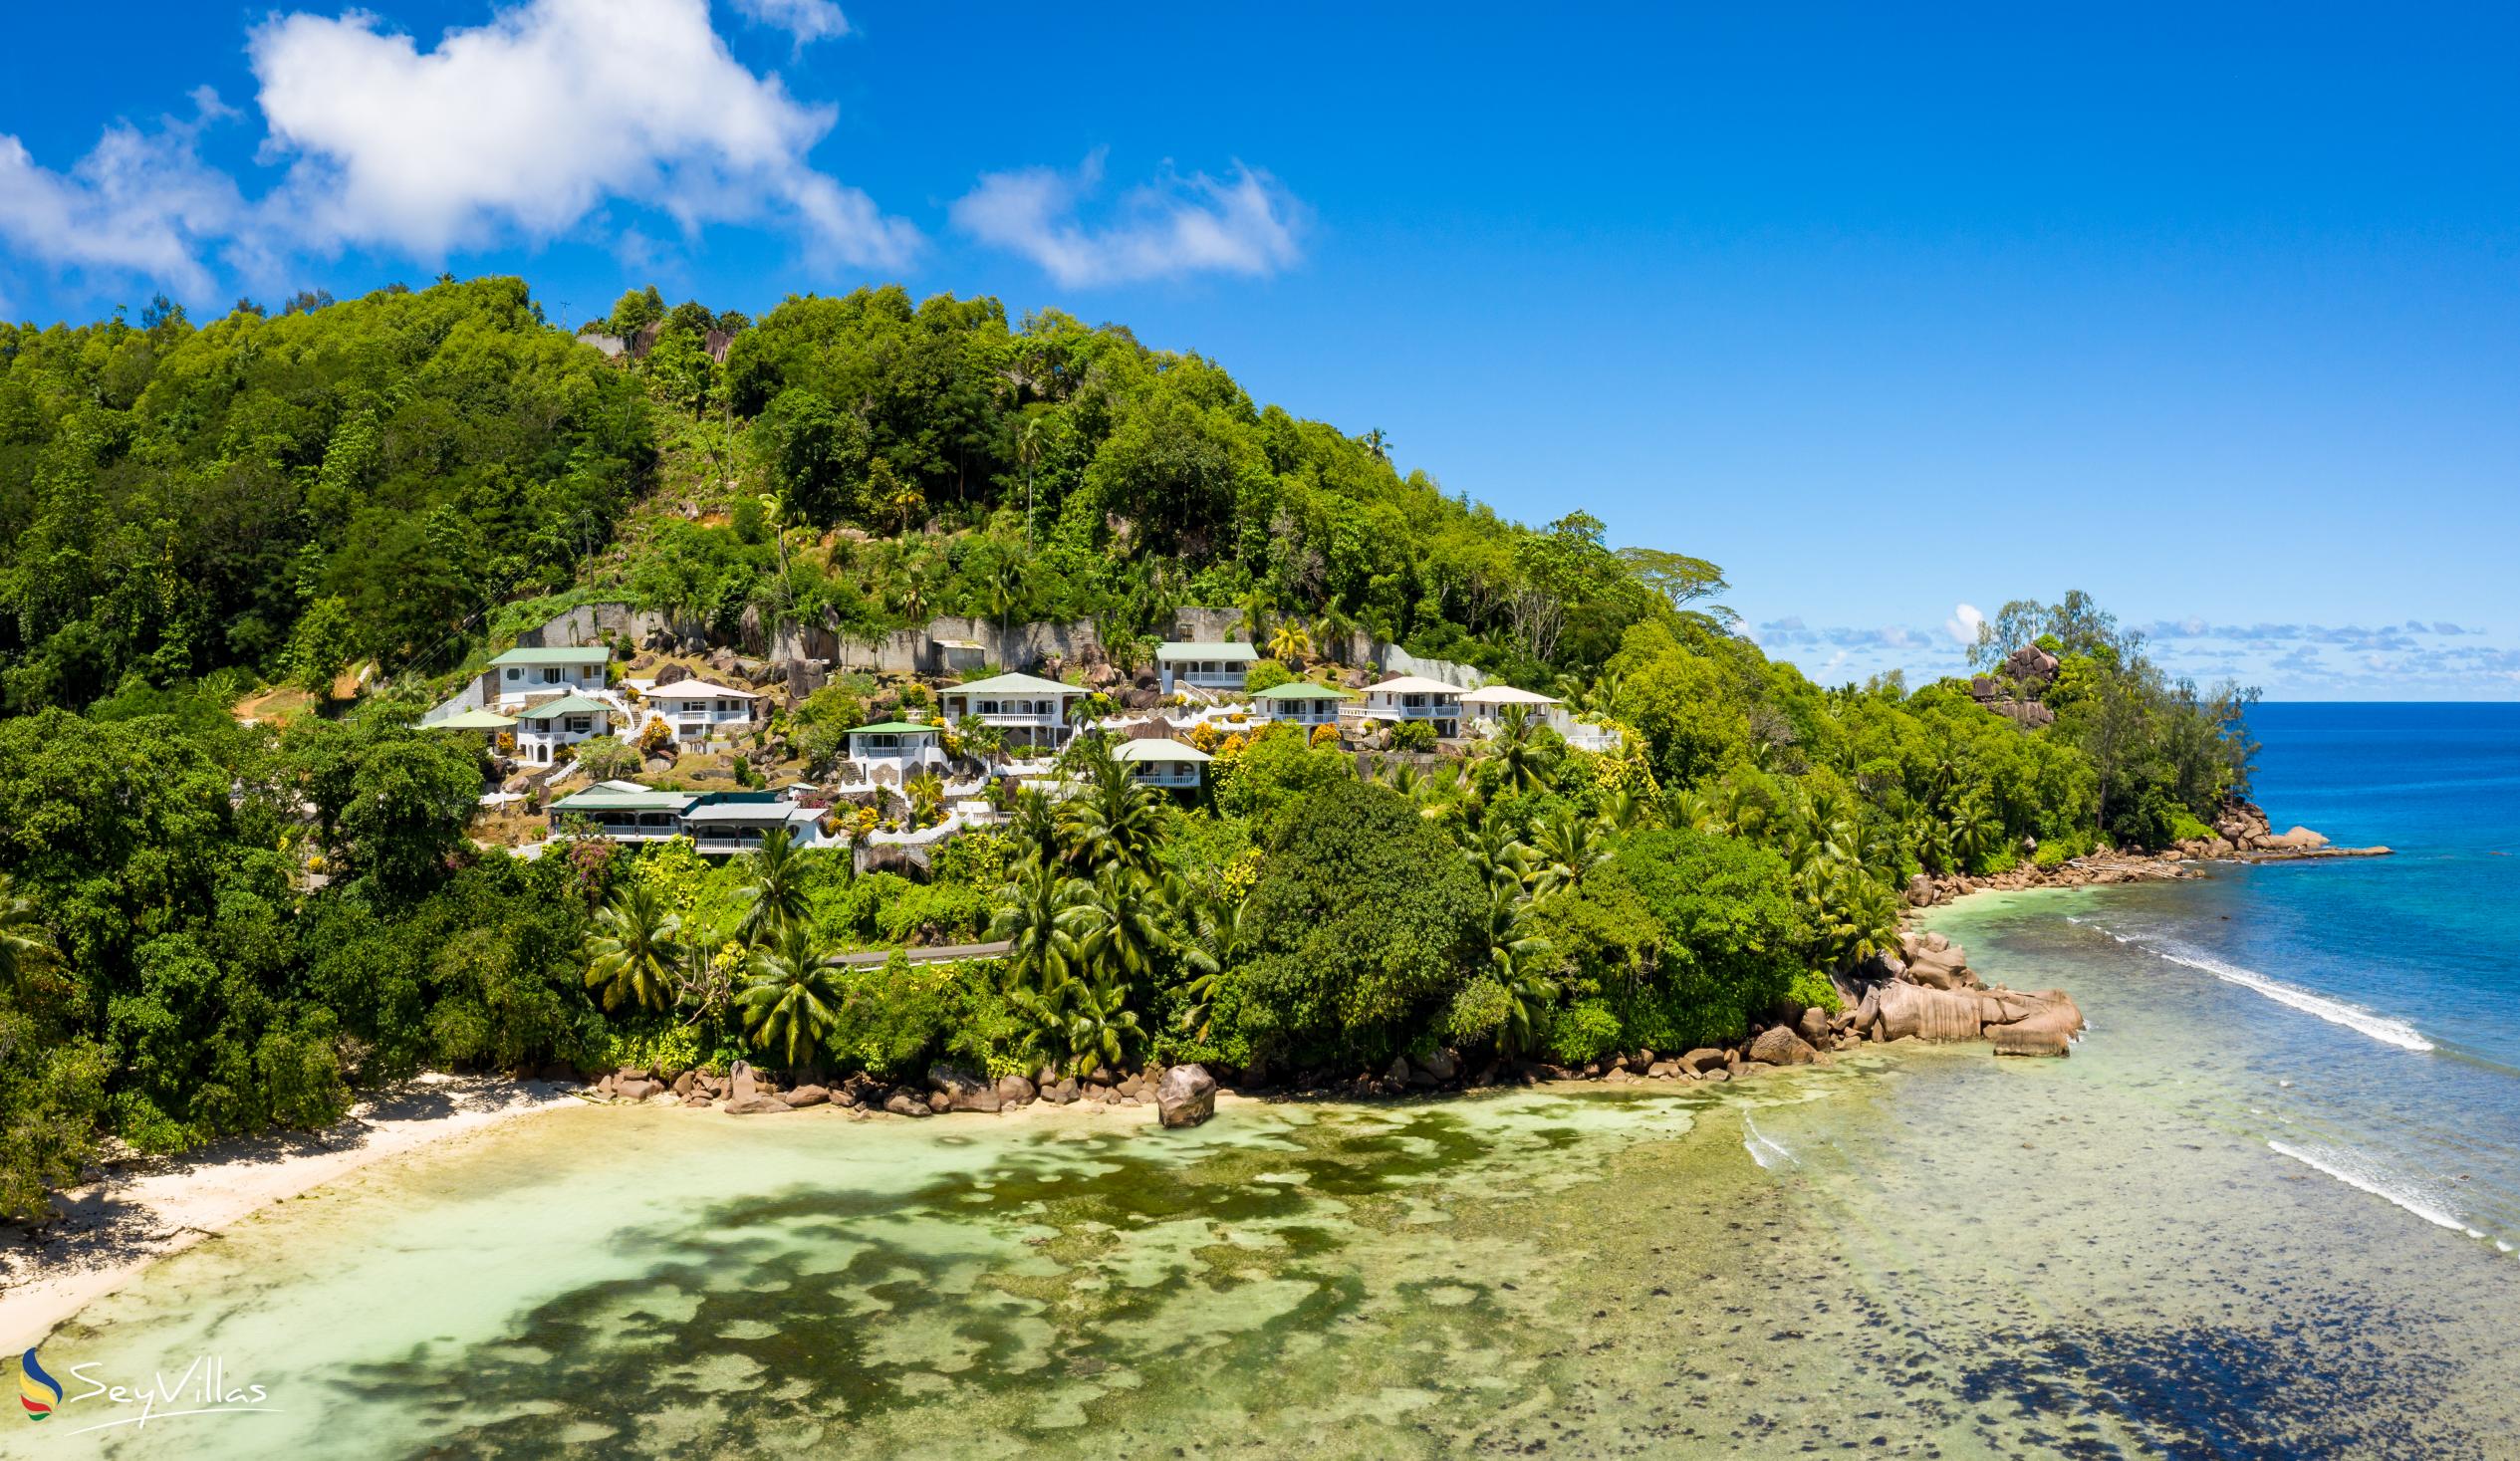 Foto 4: Lazare Picault Hotel - Extérieur - Mahé (Seychelles)